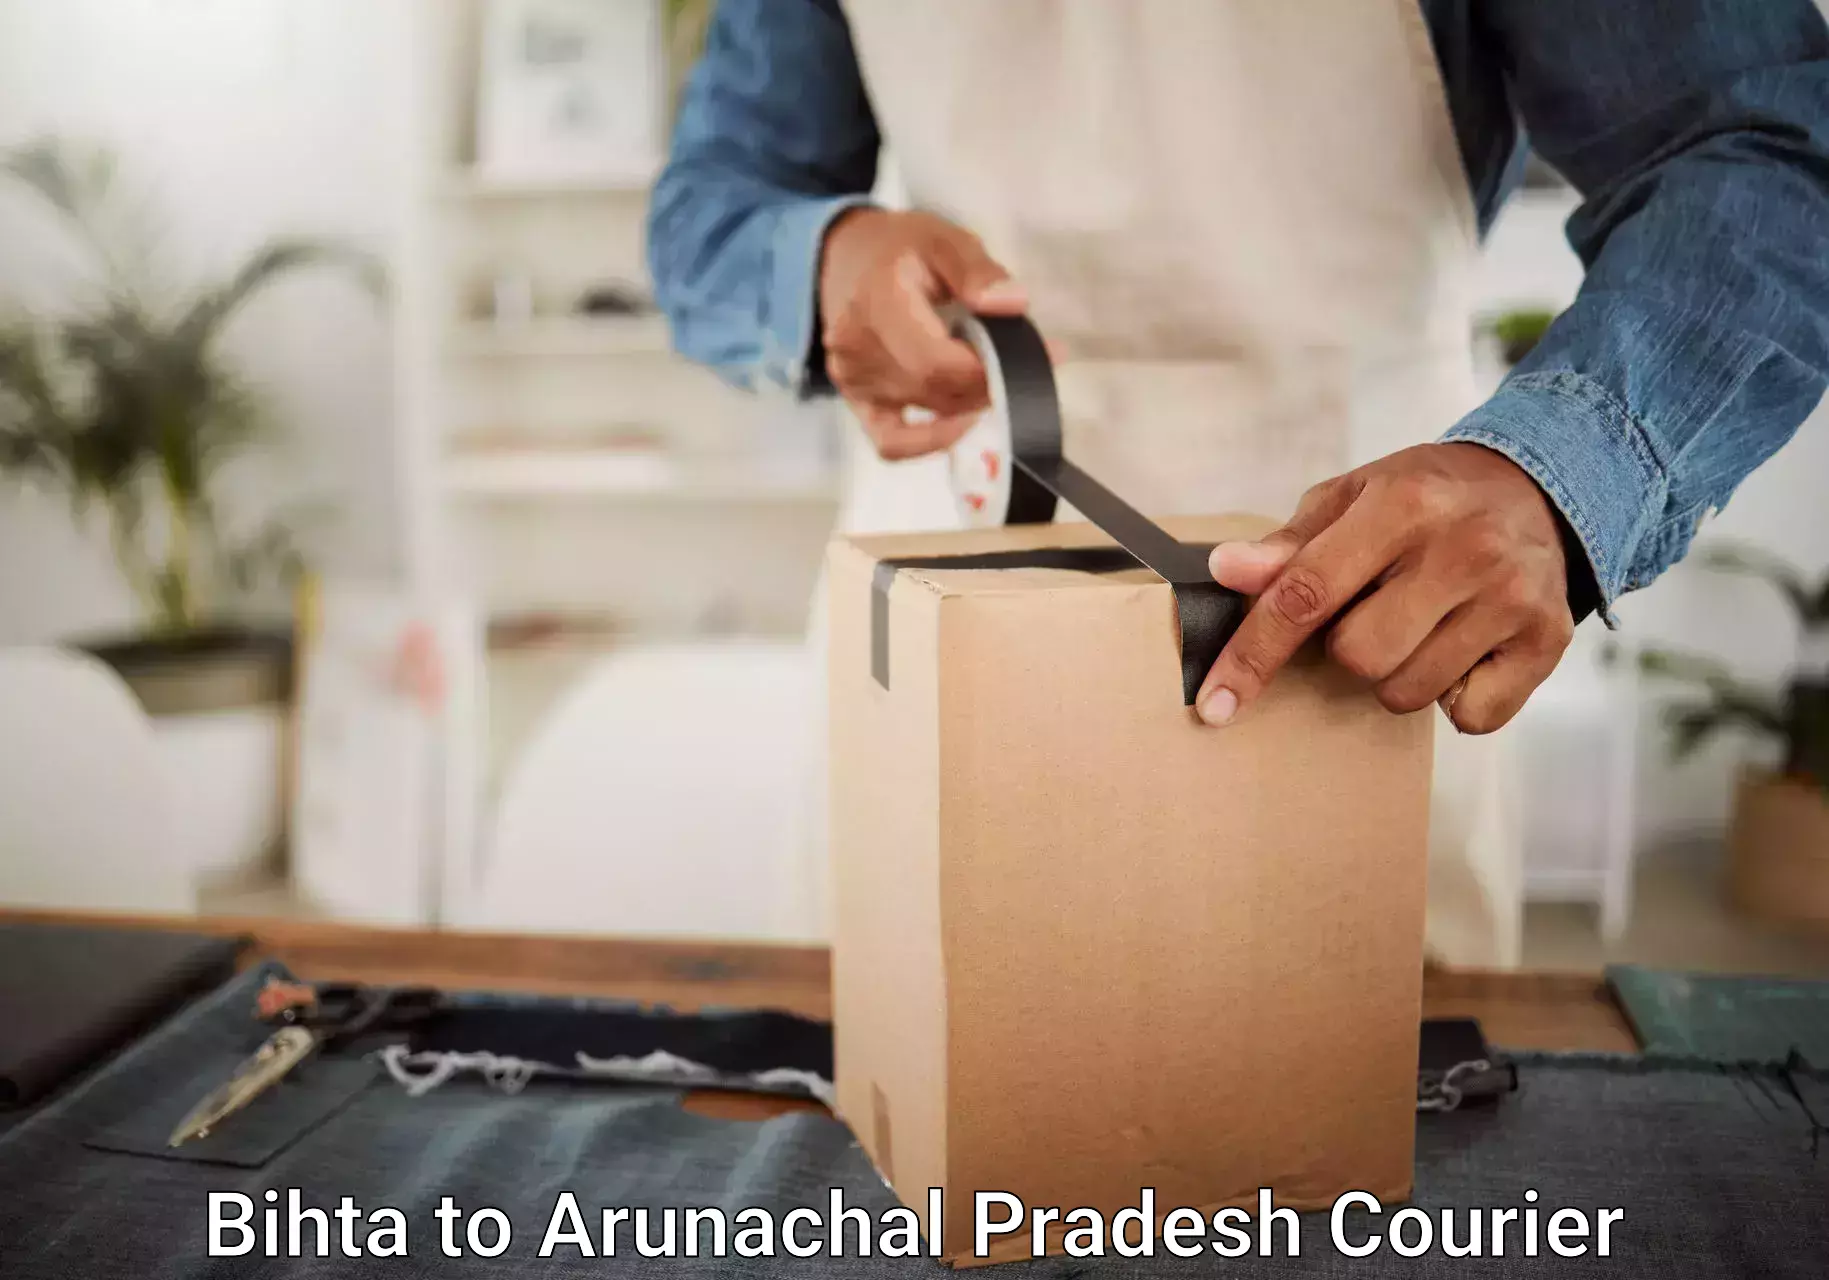 Luggage transport deals Bihta to Arunachal Pradesh